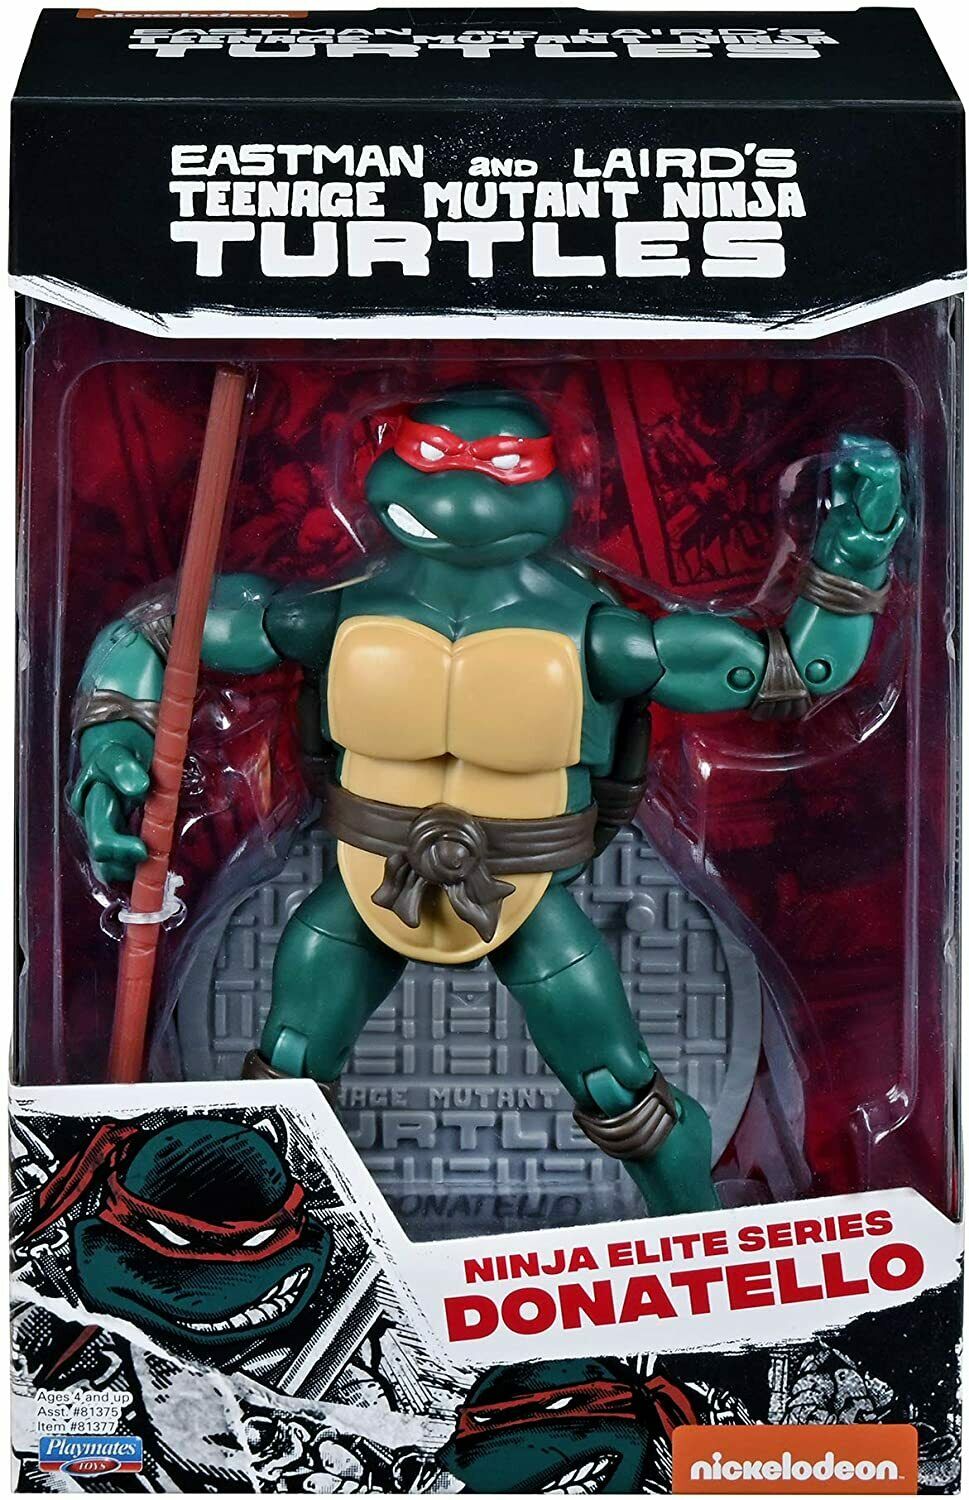 Teenage Mutant Ninja Turtles TMNT Elite Series PX Exclusive Donatello Action Figure - Playmates